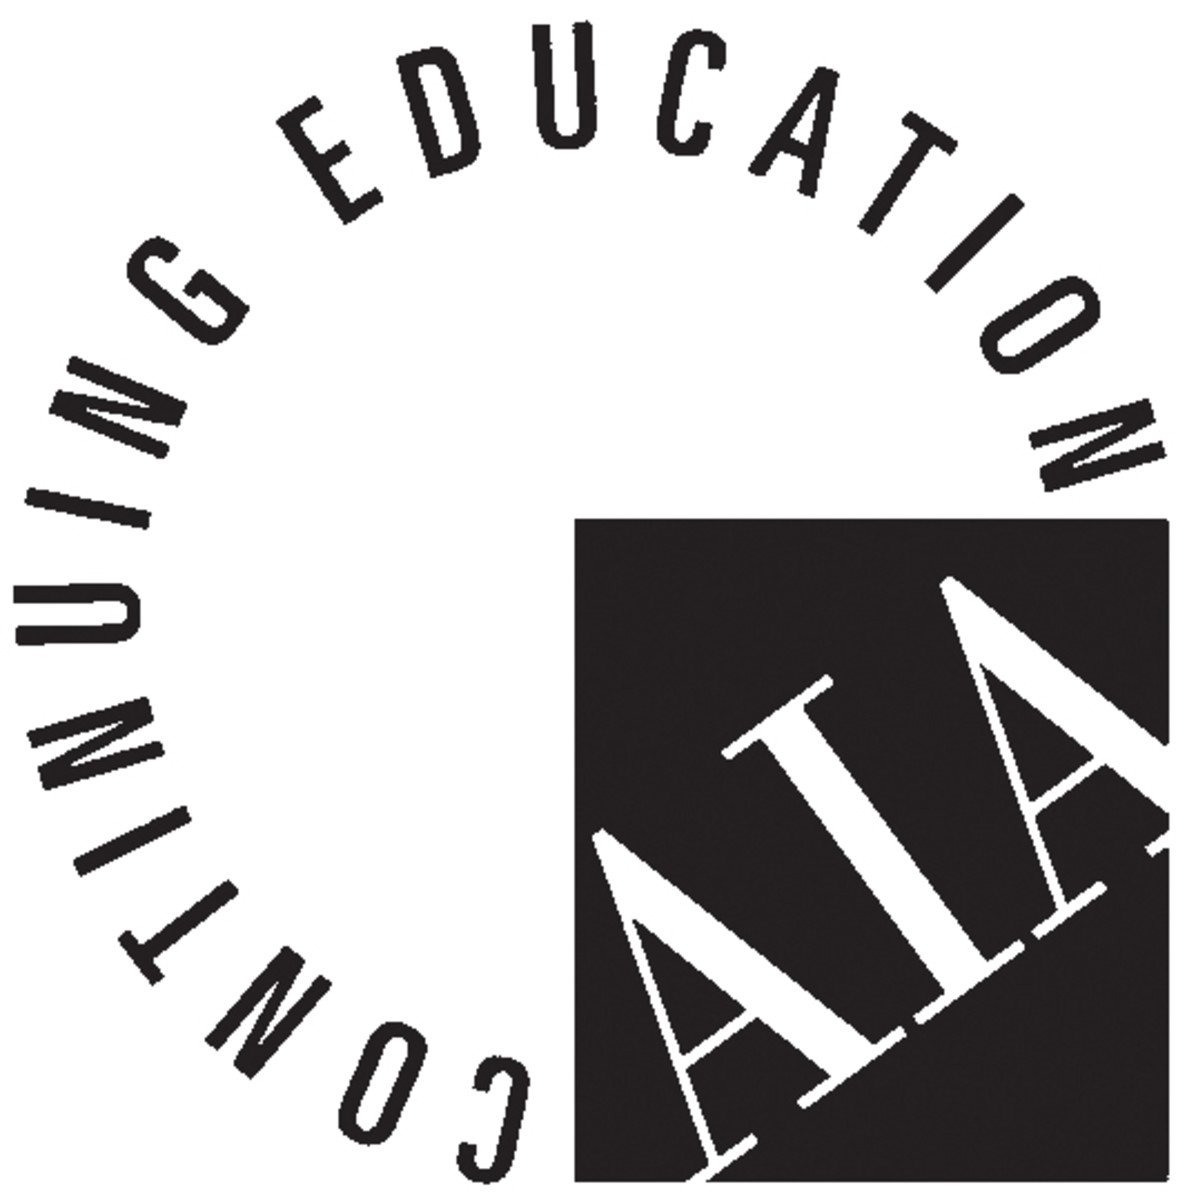 AIA continuing education logo